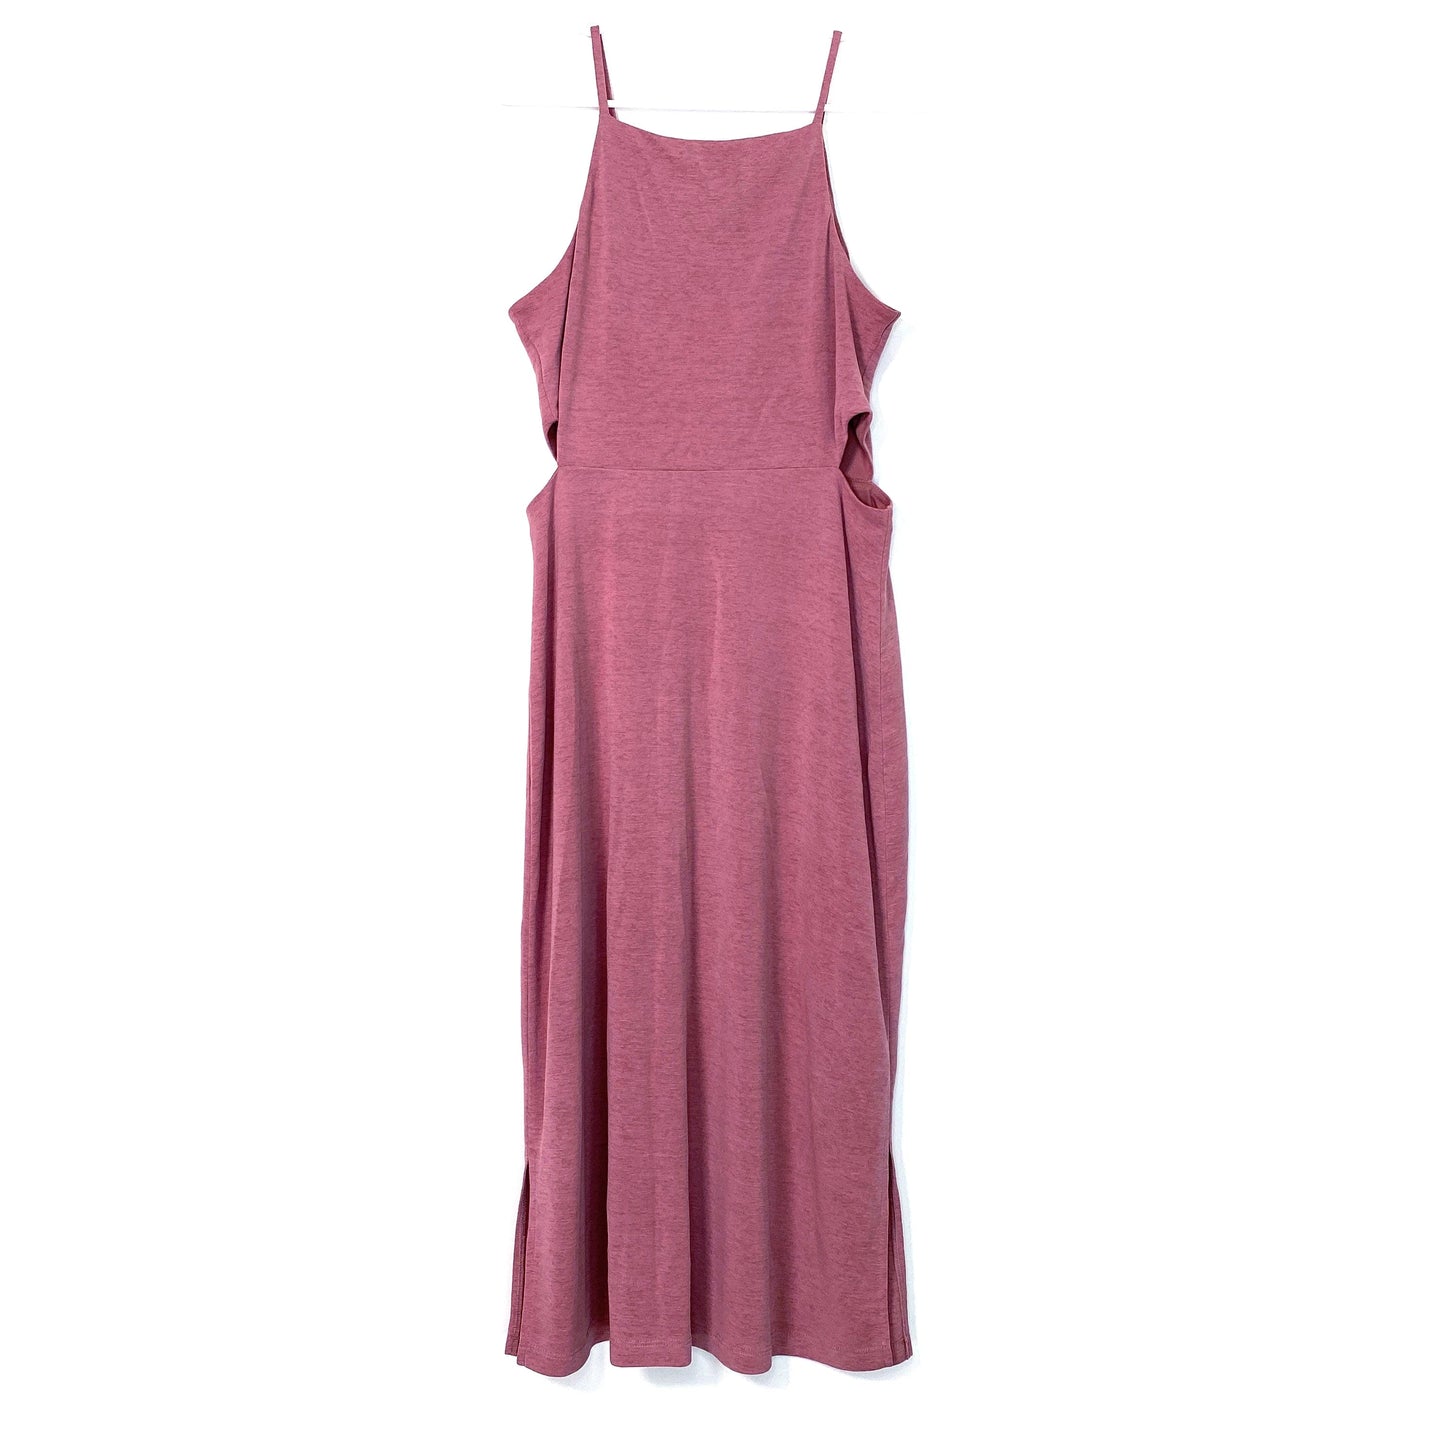 TOPSHOP Womens Size 6 Pink Bodycon Cutout Dress Spaghetti Straps